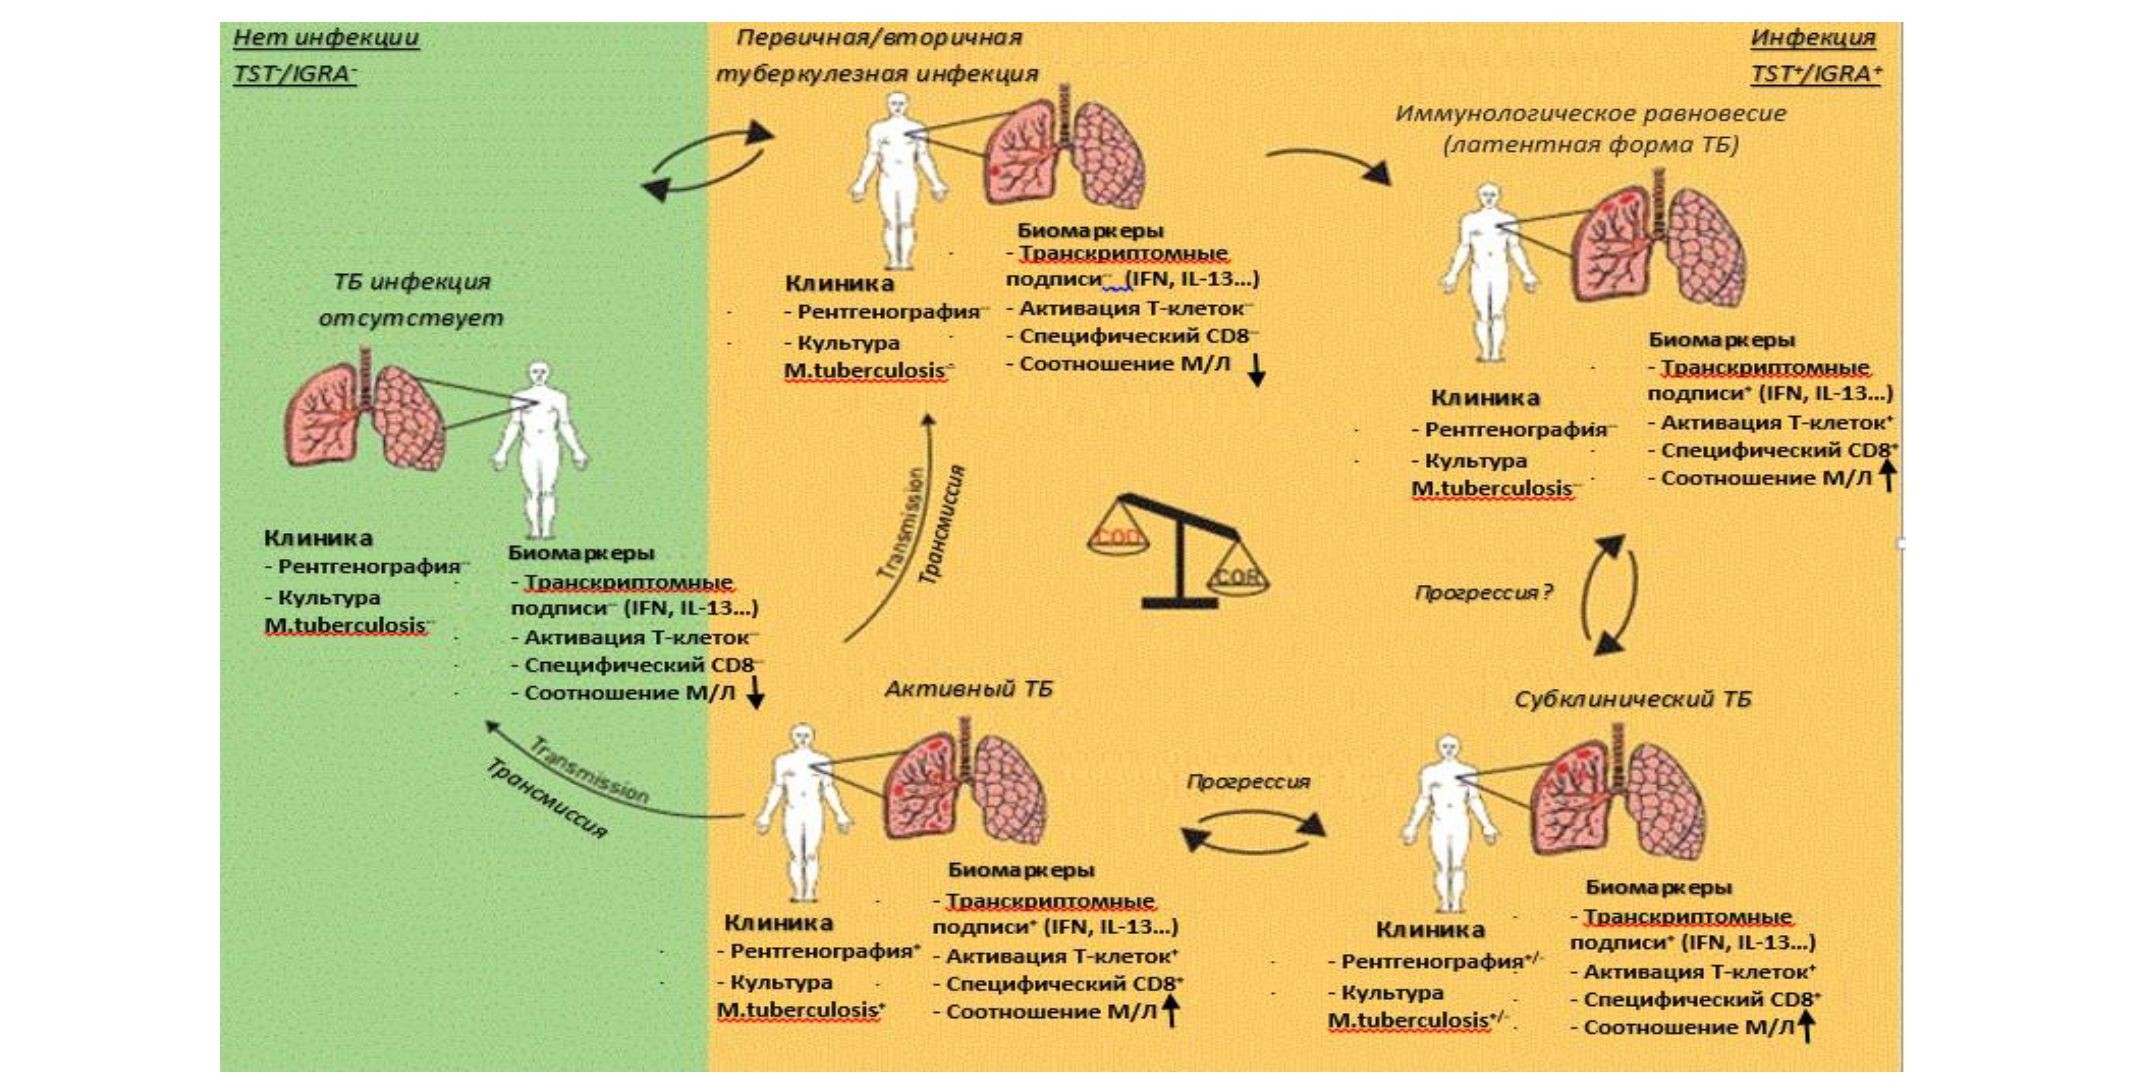 Прогностические иммунологические биомаркеры диагностики и прогрессирования латентного туберкулеза (мини-обзор)